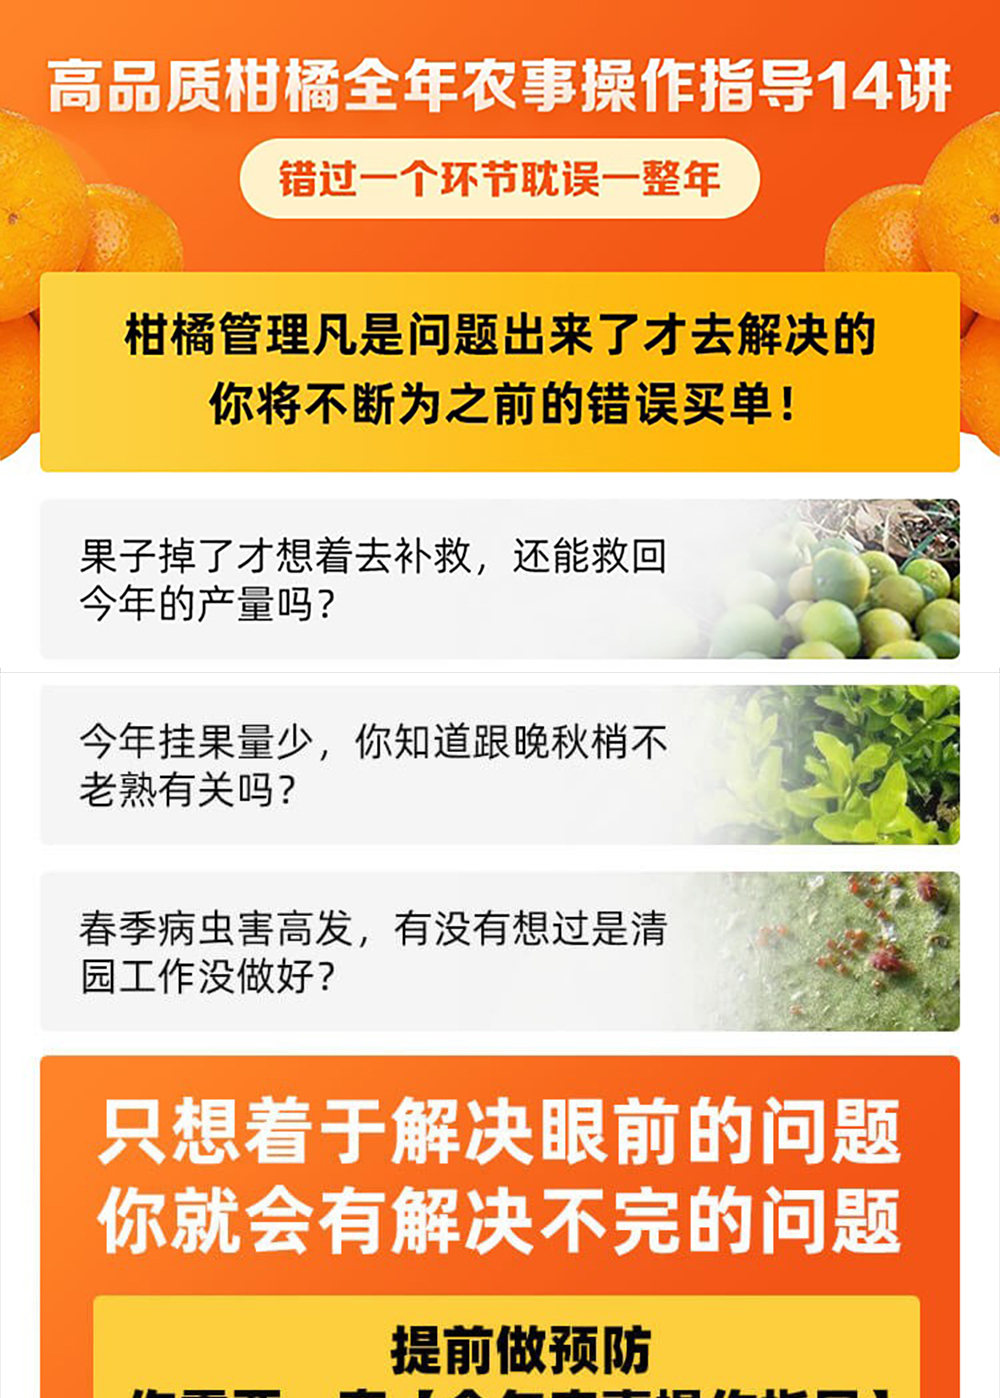 高品质柑橘全年农事操作指导14讲（课详1000）_01.jpg